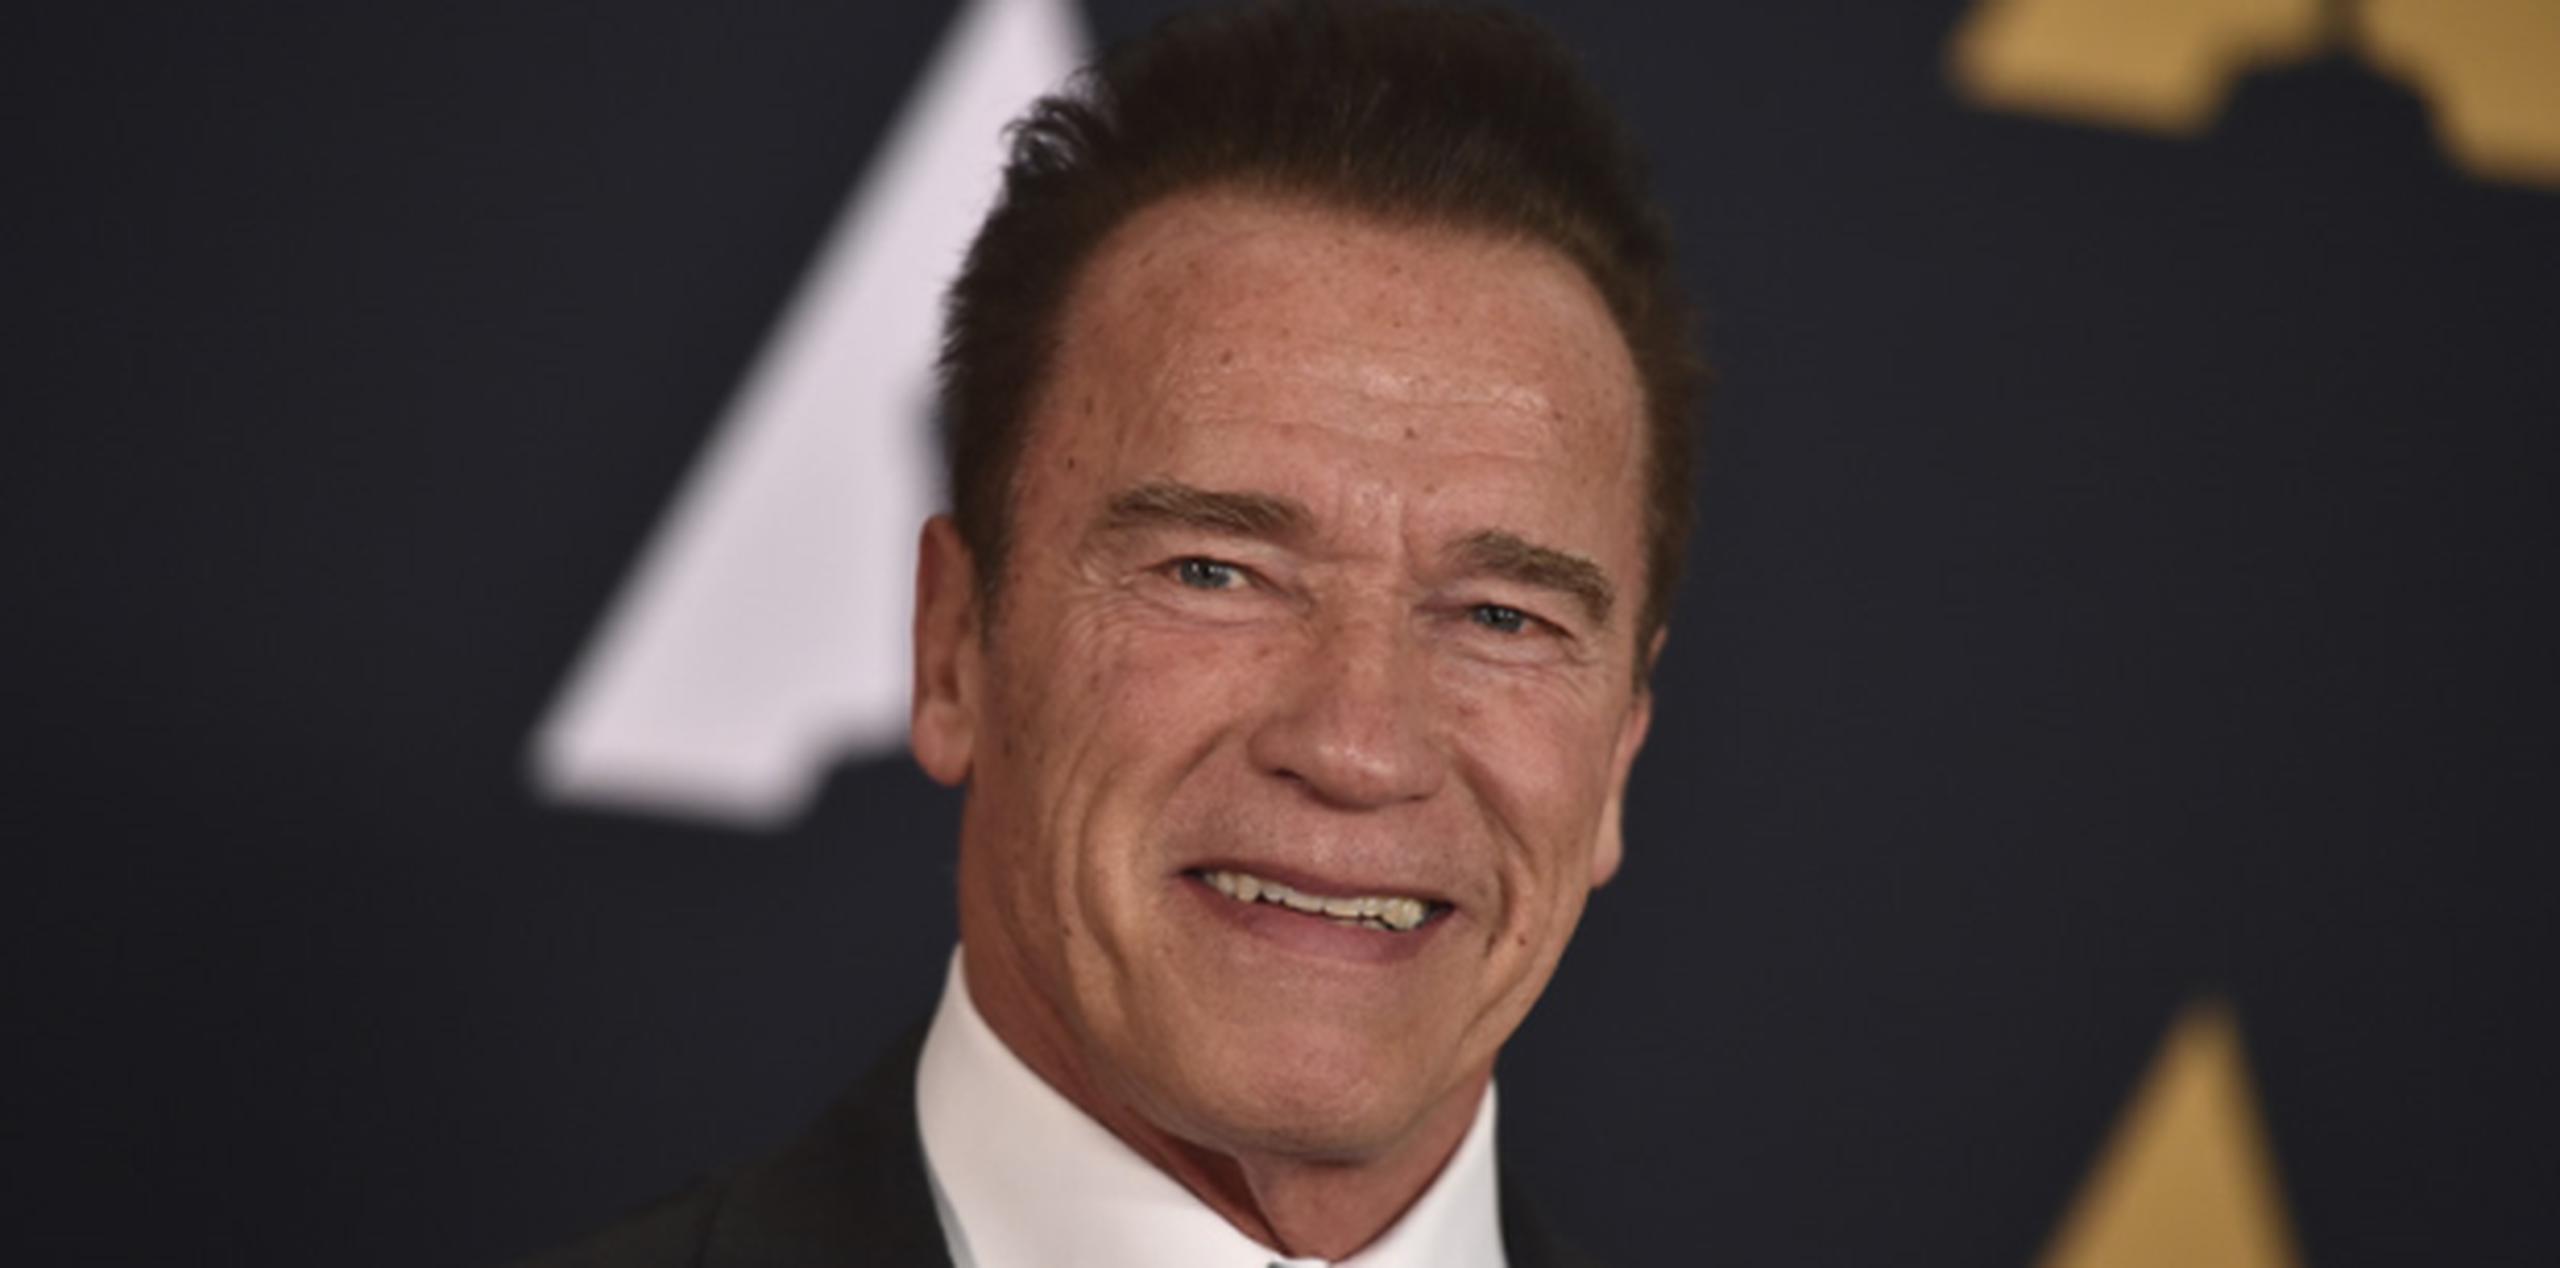 Schwarzenegger aseguró que los estadounidenses deben unirse "para volvernos una nación". (AP)